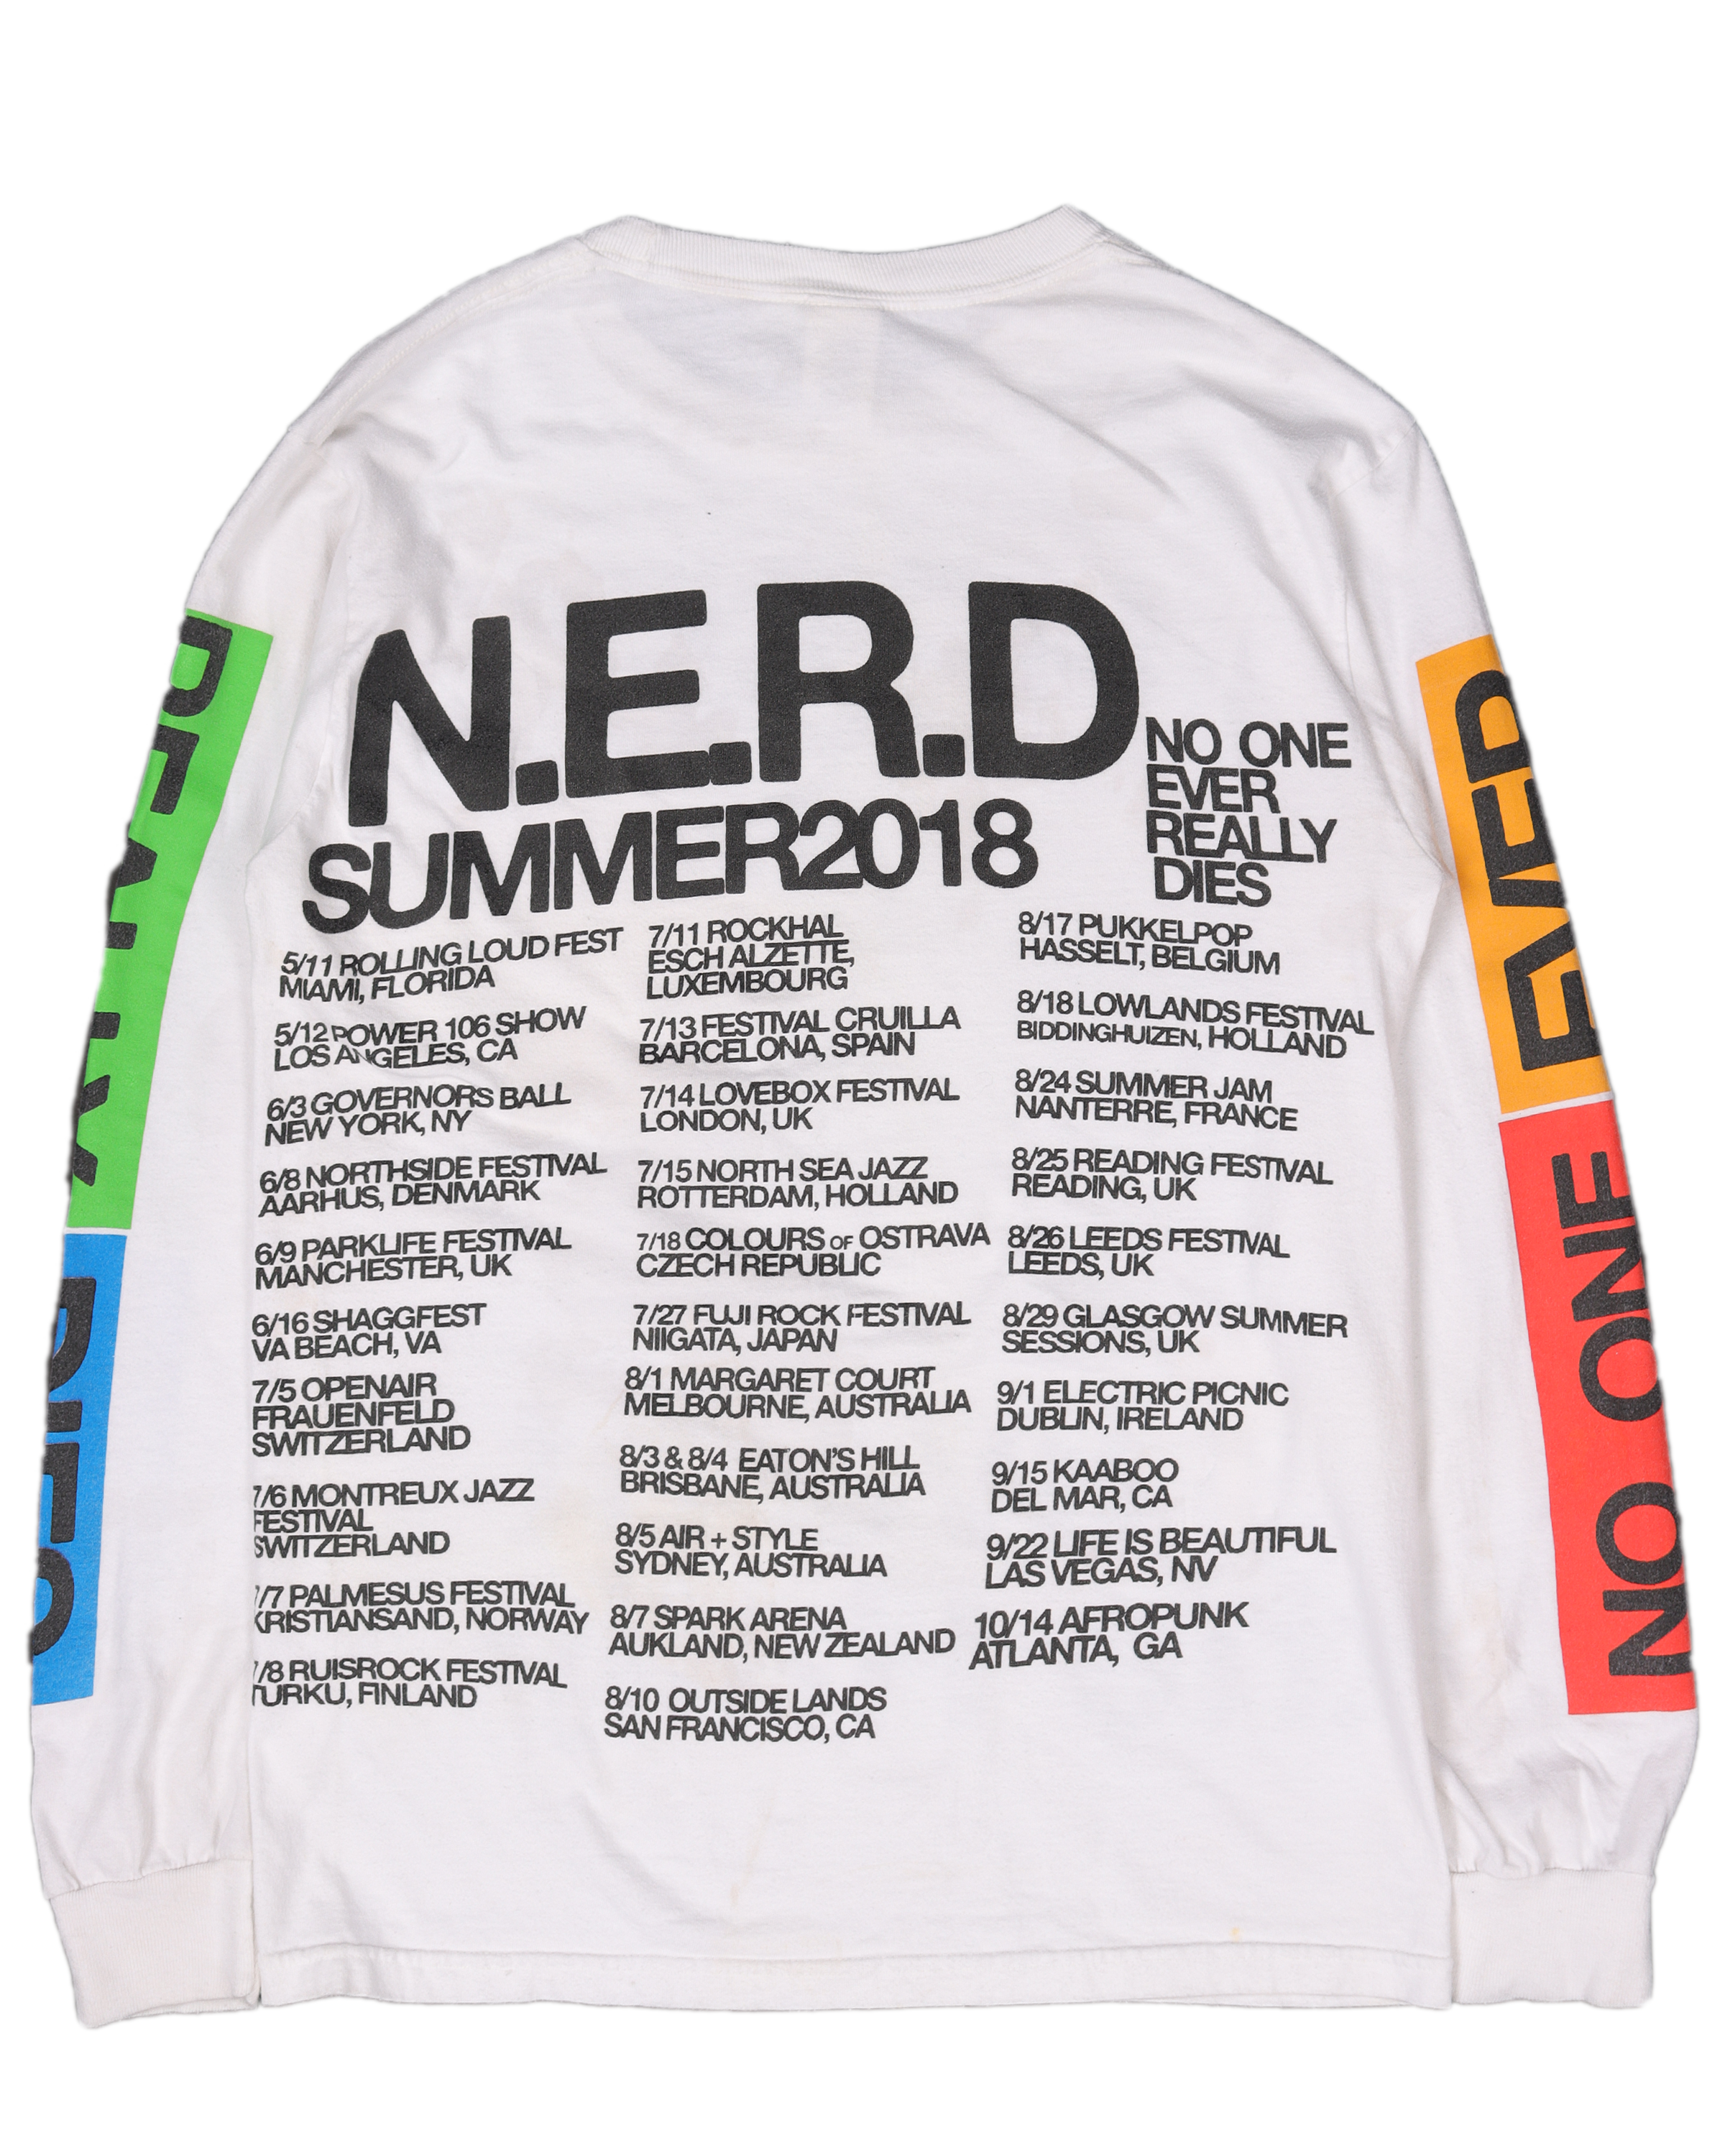 N.E.R.D "ESP" 2018 Tour L/S T-Shirt